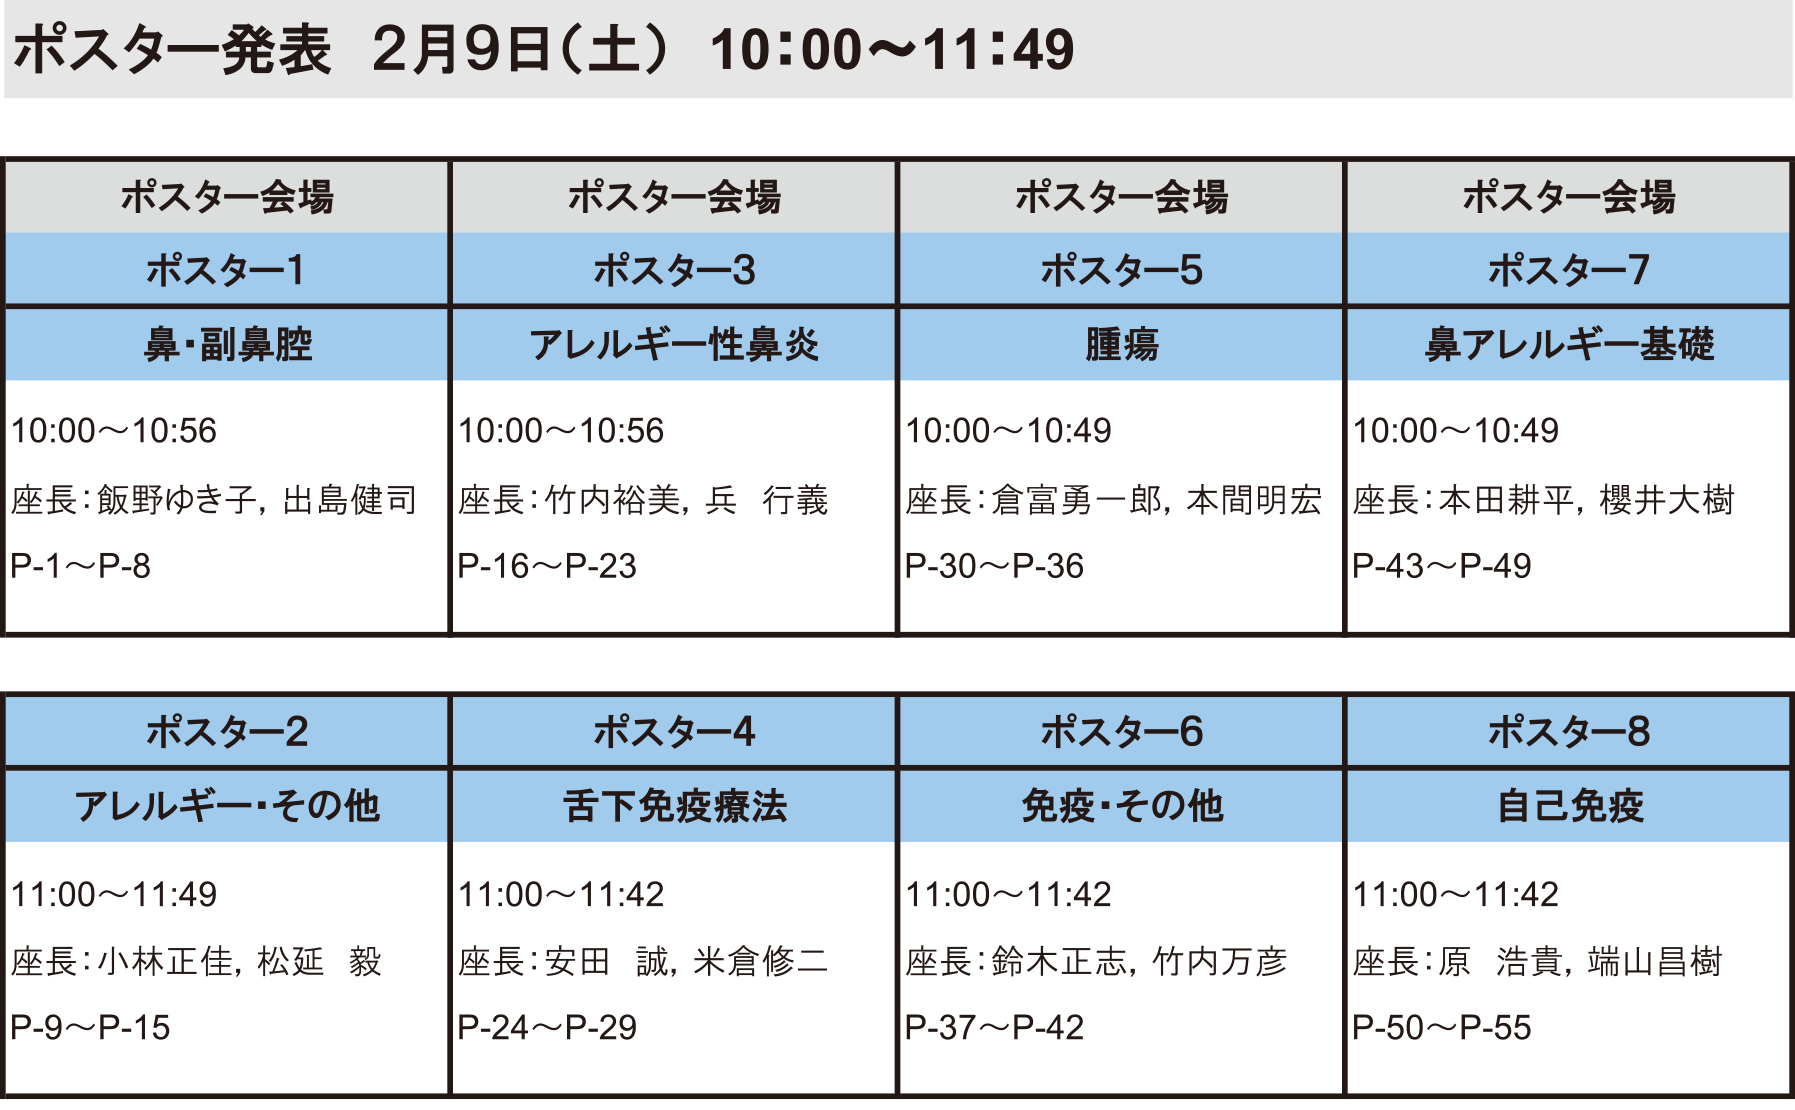 第37 回日本耳鼻咽喉科免疫アレルギー学会日程表：３日目